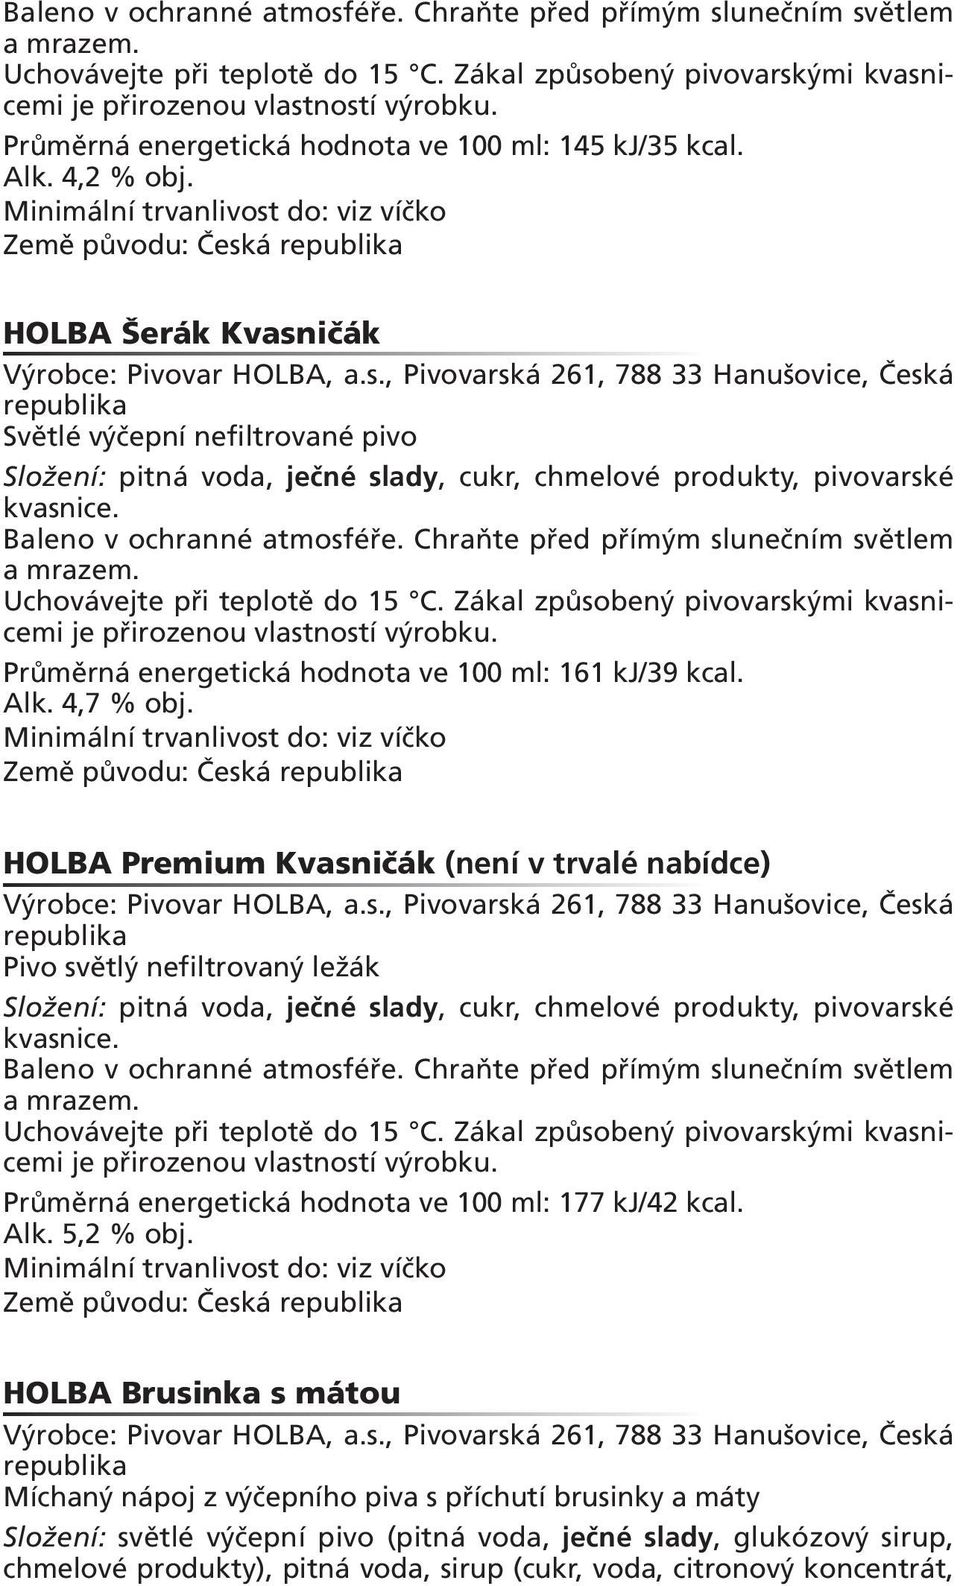 HOLBA Premium Kvasničák (není v trvalé nabídce) Pivo světlý nefiltrovaný ležák  Průměrná energetická hodnota ve 100 ml: 177 kj/42 kcal. Alk. 5,2 % obj.